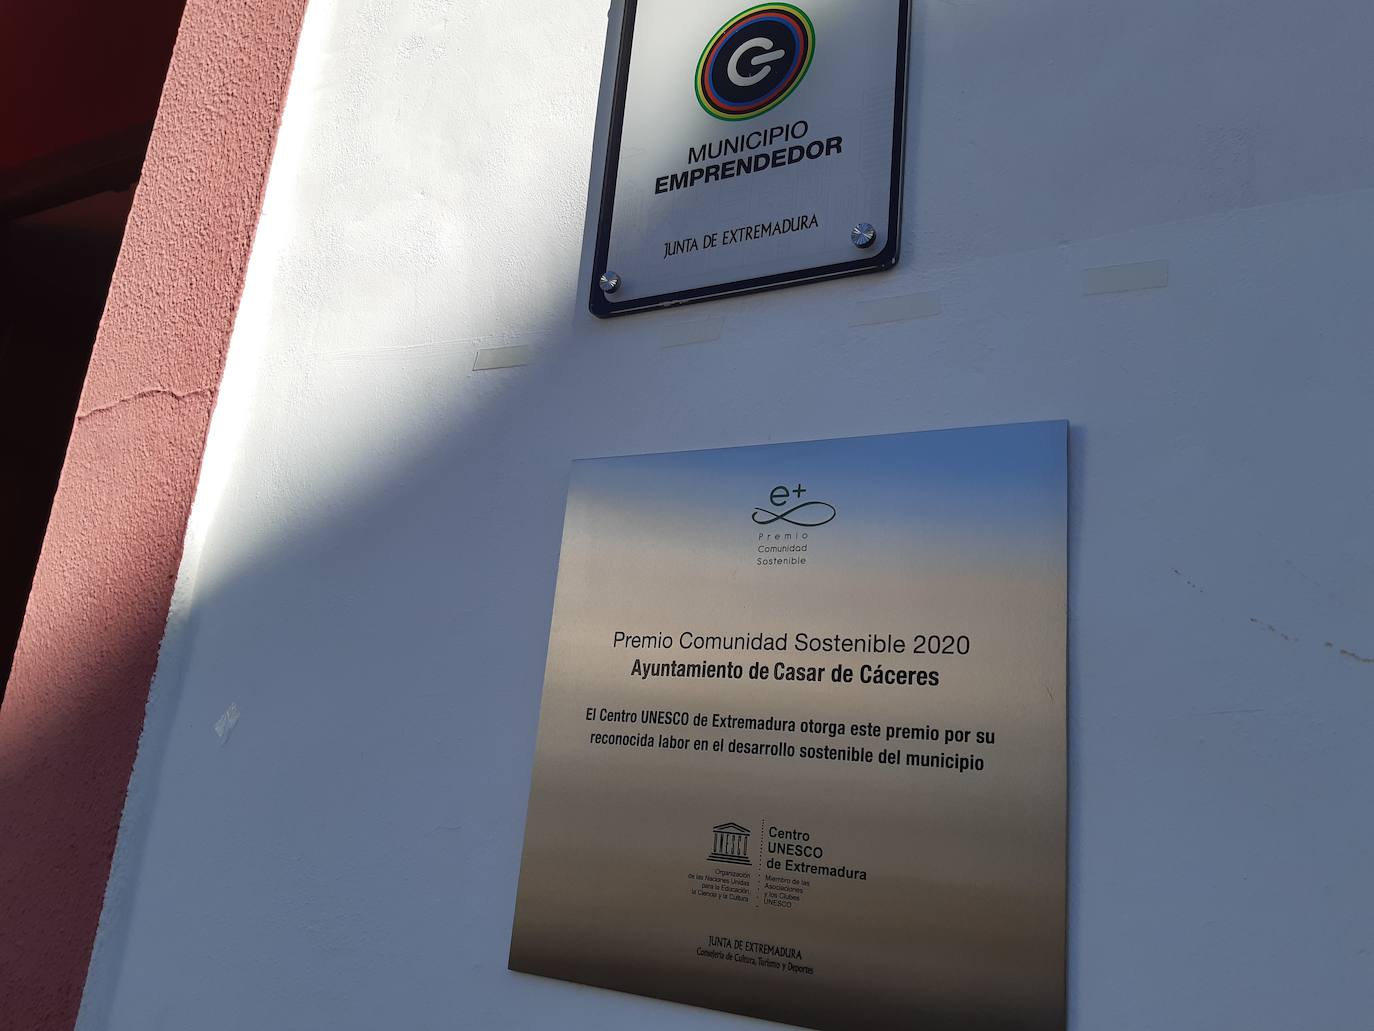 Imagen secundaria 2 - Casar de Cáceres descubre su placa del Premio Comunidad Sostenible